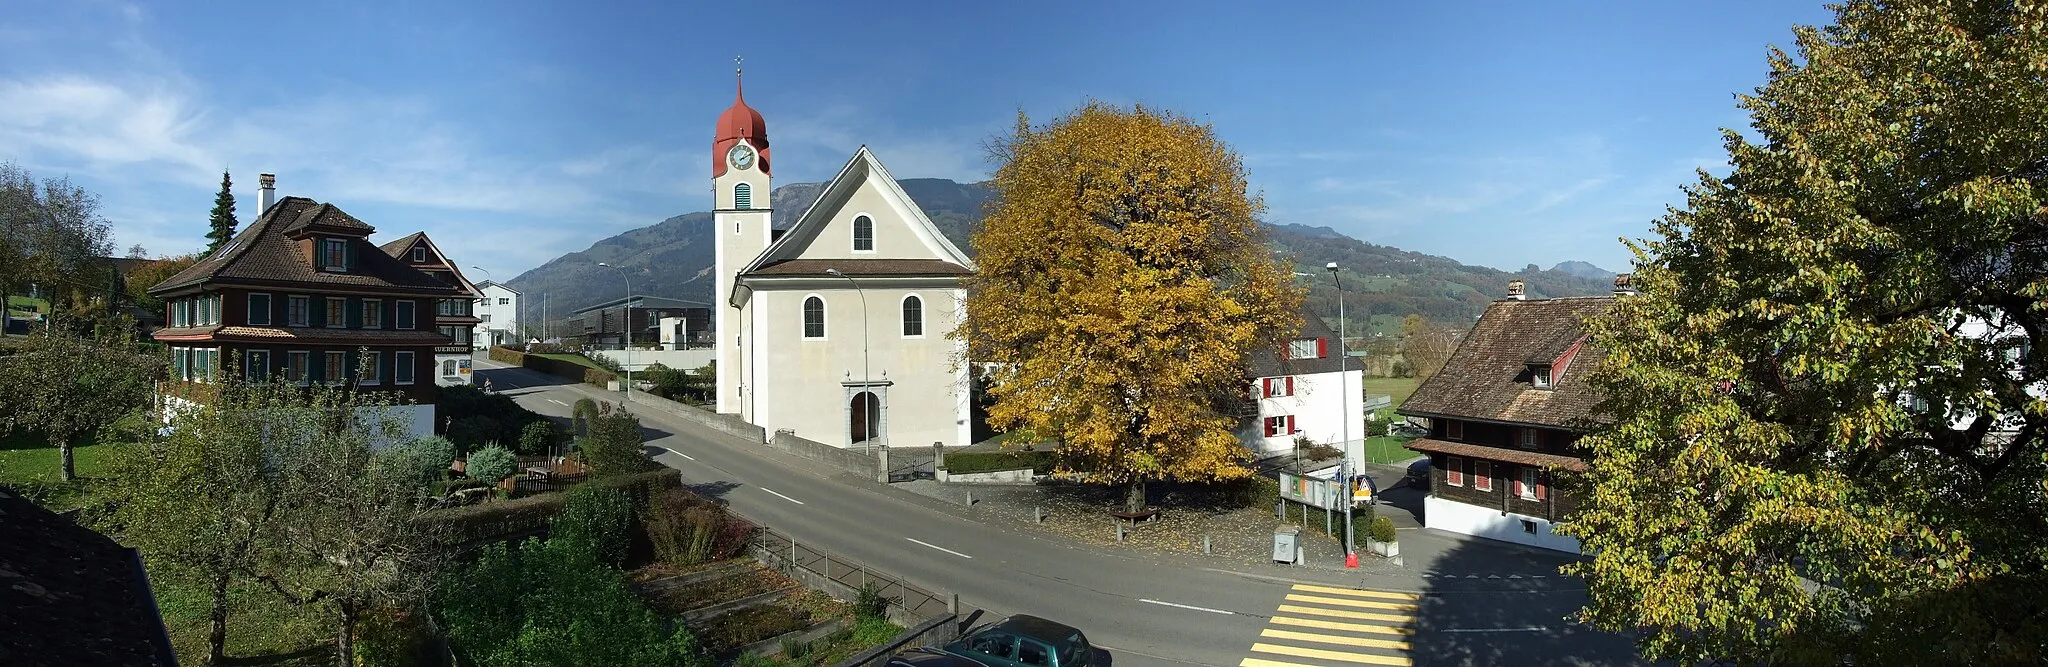 Photo showing: Ortskern von Lauerz mit der katholischen Pfarrkirche und einer herbstlich goldfarbenen Linde im Zentrum